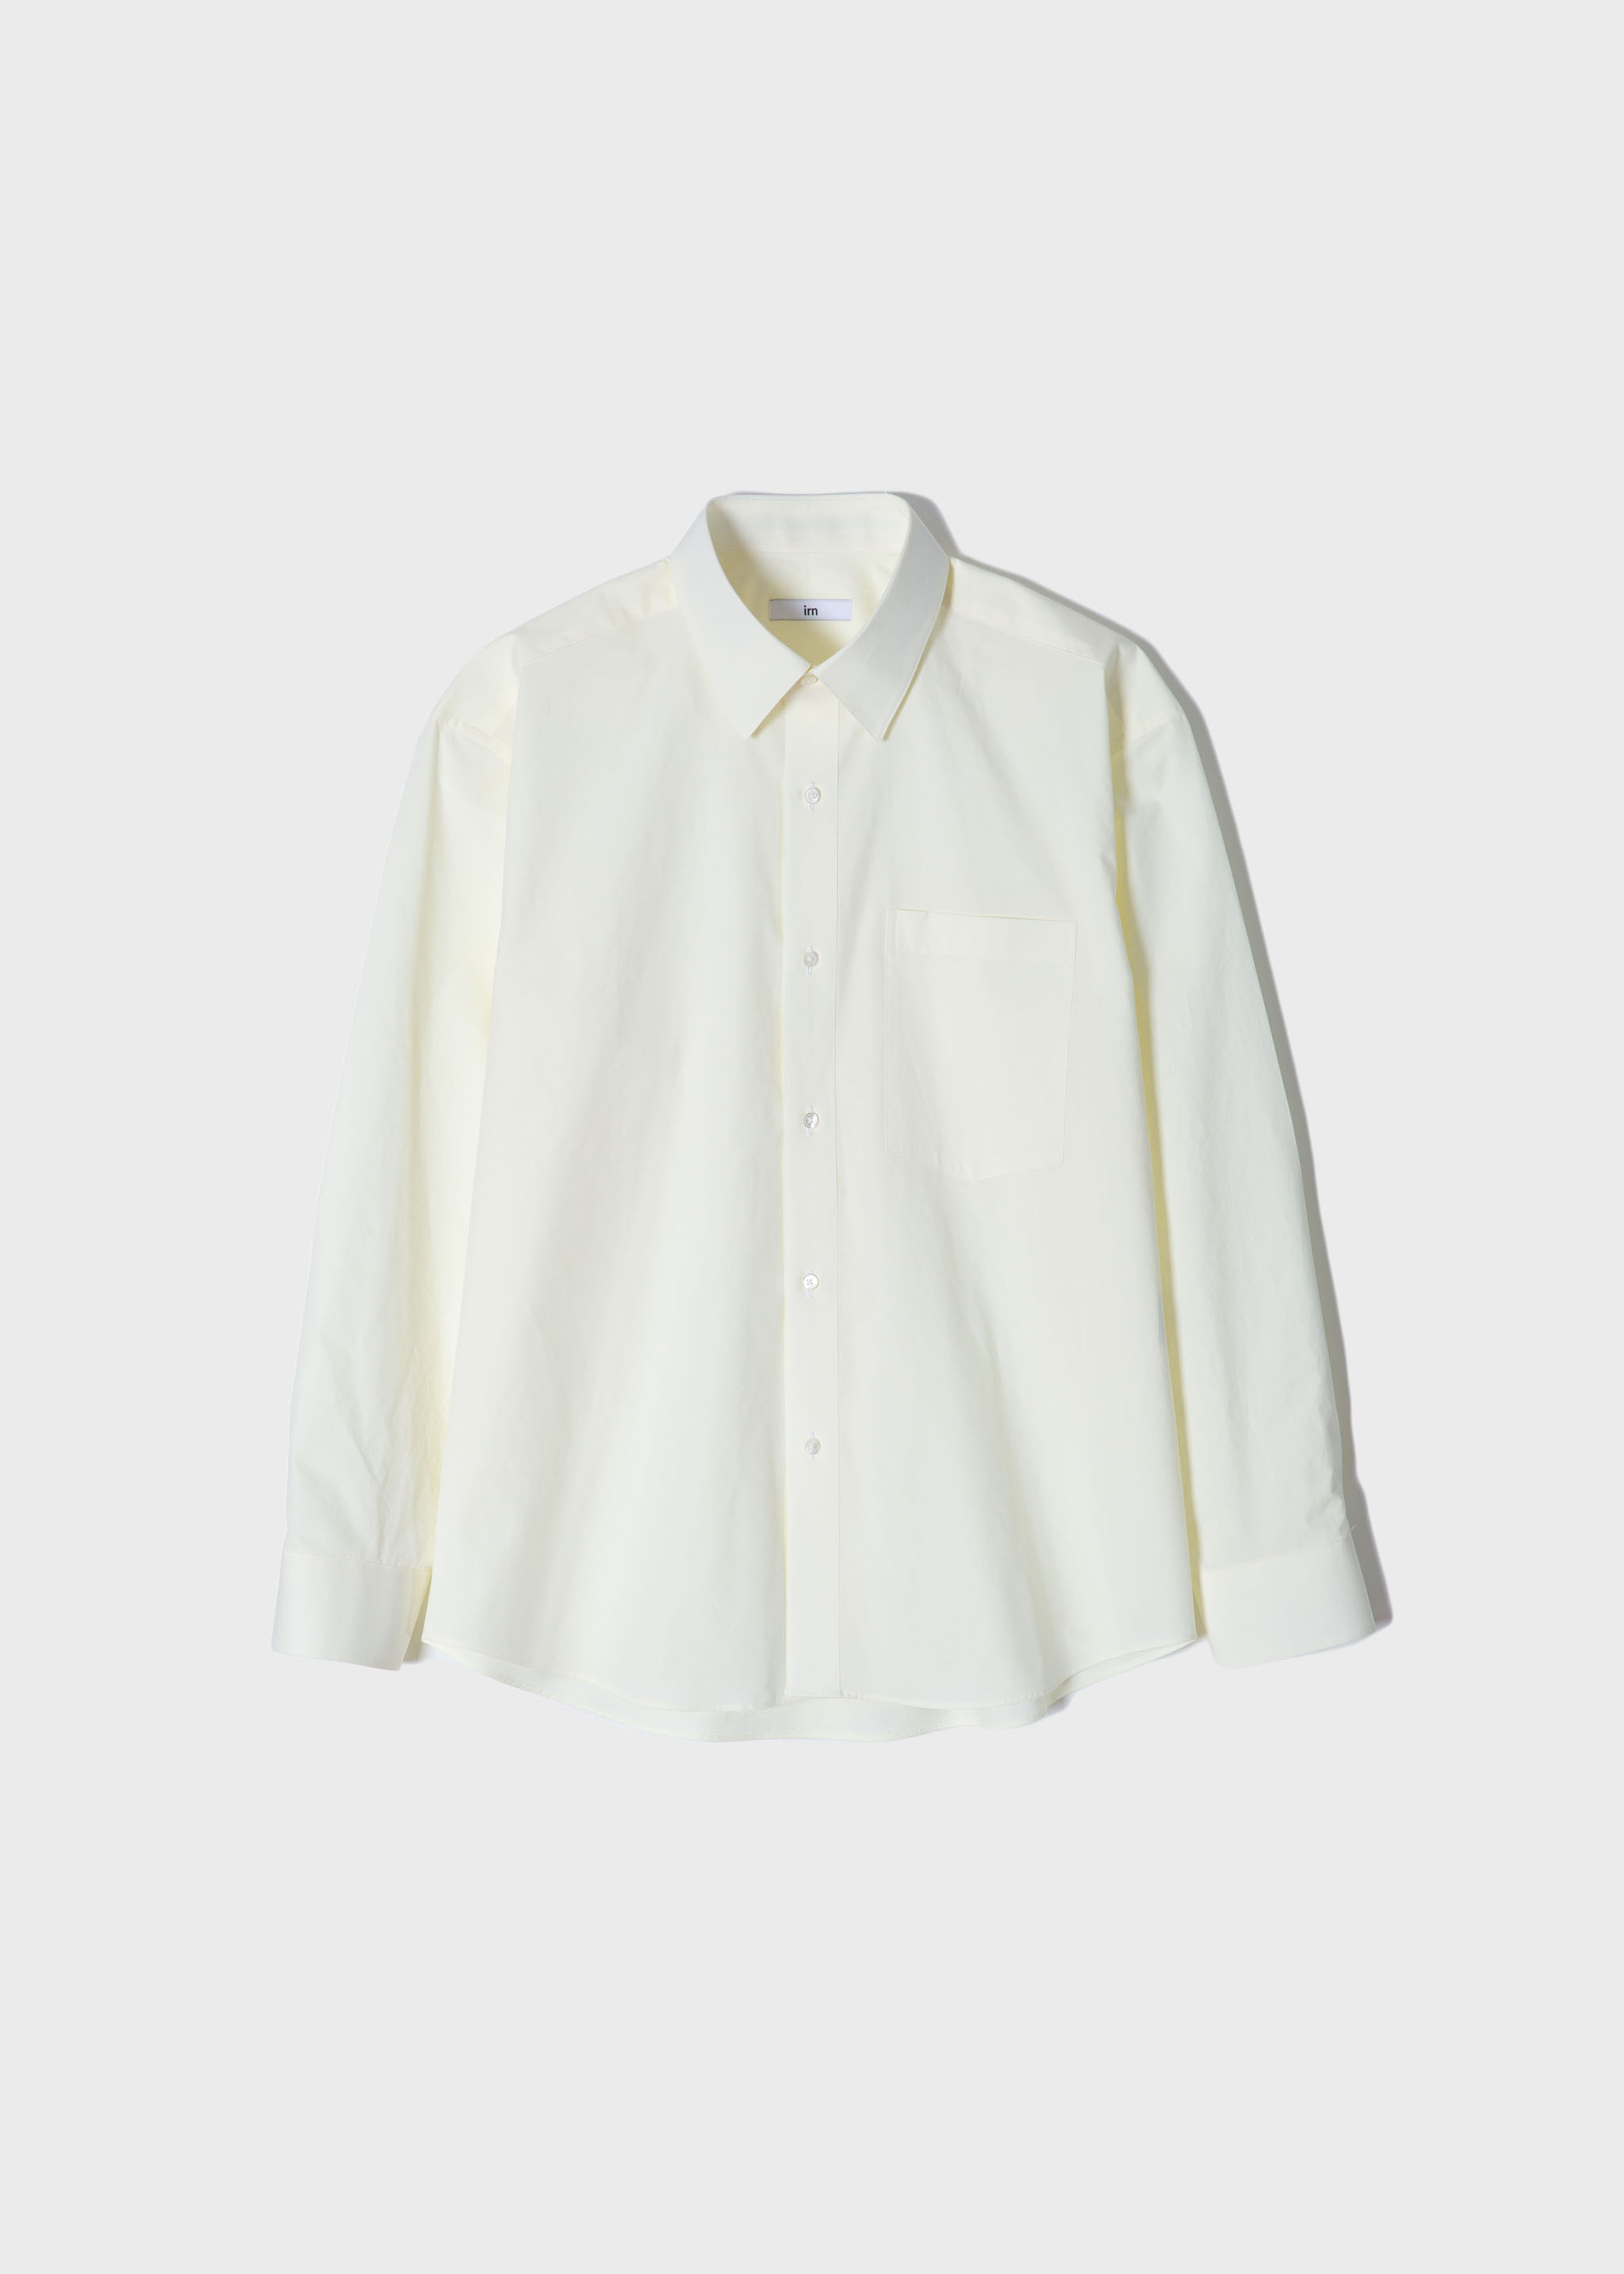 [이른(irn) x hyeonkim]  Spring Shirt Cream Lemon[40수 고밀도, 세련된 색감, 기분 좋은 착용감] 10월 6일 순차 배송